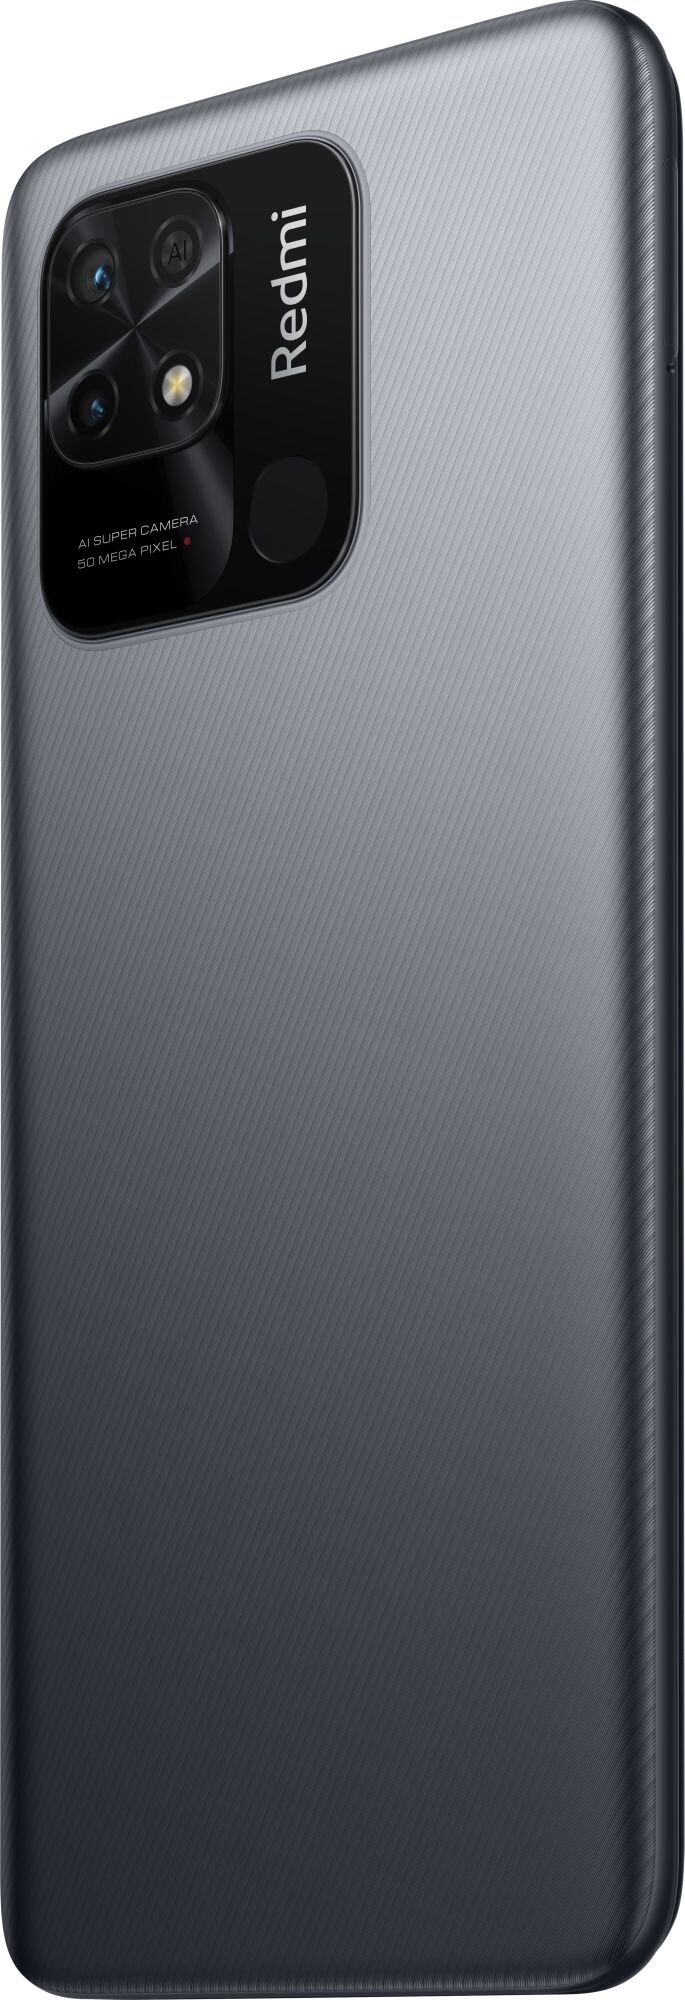 Мобильные телефоны Wiko Смартфон Xiaomi Redmi 10C NFC 4/64 Graphite Gray (Серый) RU